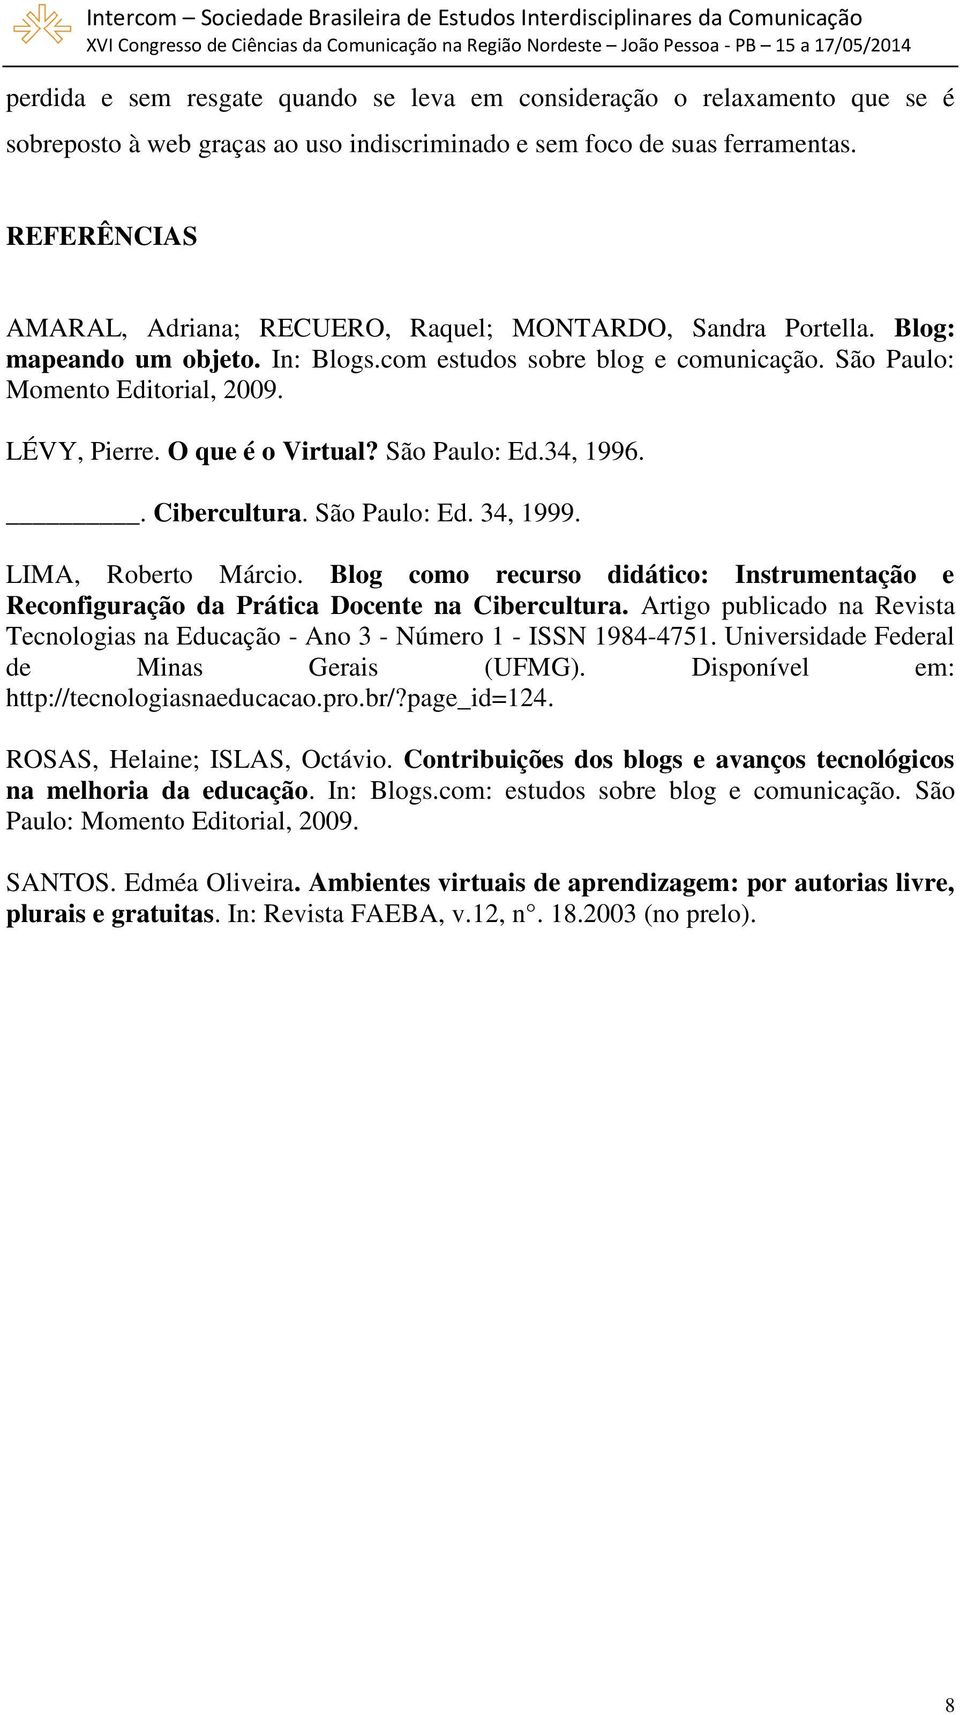 O que é o Virtual? São Paulo: Ed.34, 1996.. Cibercultura. São Paulo: Ed. 34, 1999. LIMA, Roberto Márcio. Blog como recurso didático: Instrumentação e Reconfiguração da Prática Docente na Cibercultura.